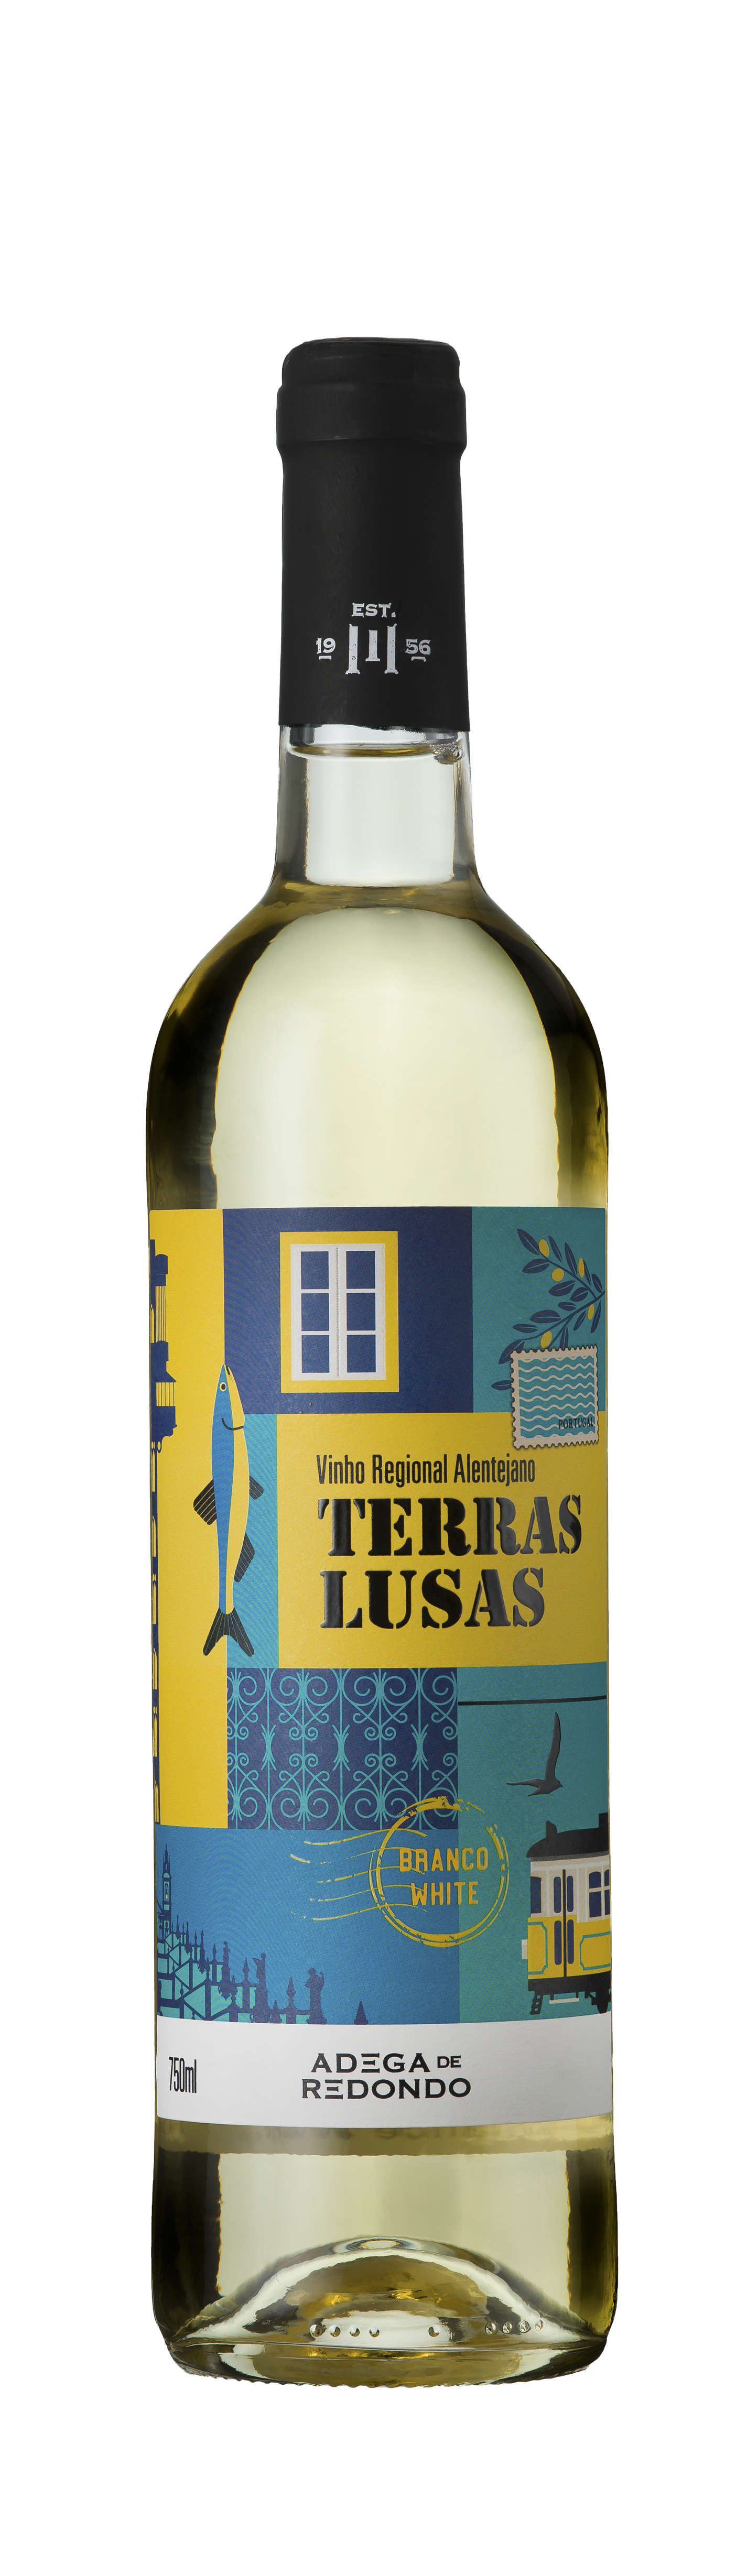 Bottle shot - Adega de Redondo, Terras Lusas Branco, Vinho Regional Alentejano, Portugal